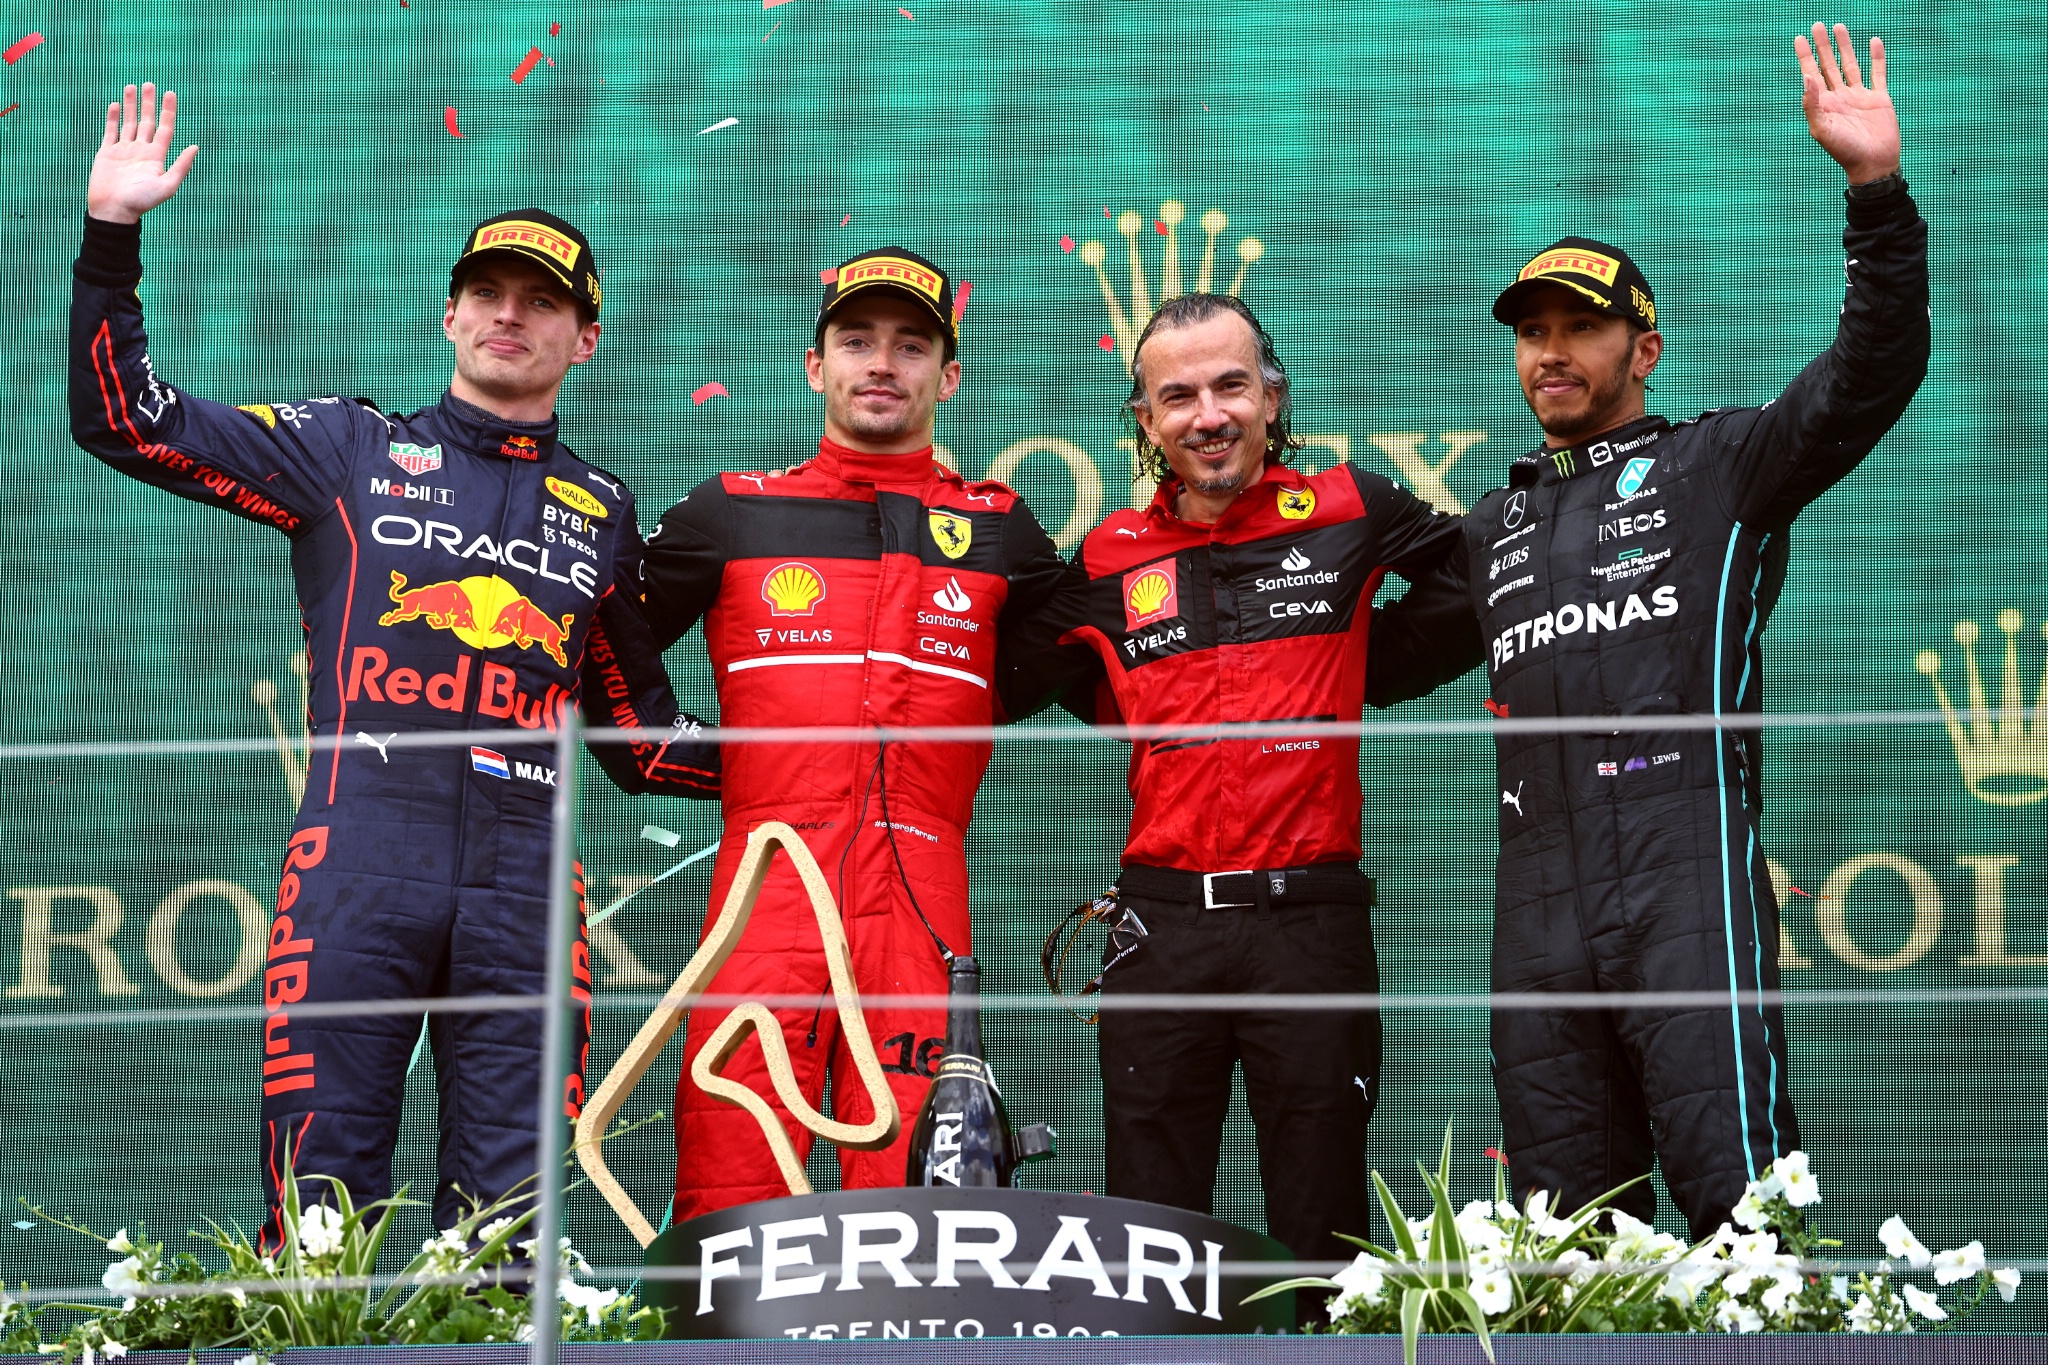 Tempat pertama Charles Leclerc (MON) Ferrari F1-75 dengan juara 2 Max Verstappen (NLD) Red Bull Racing RB18, juara 3 Lewis